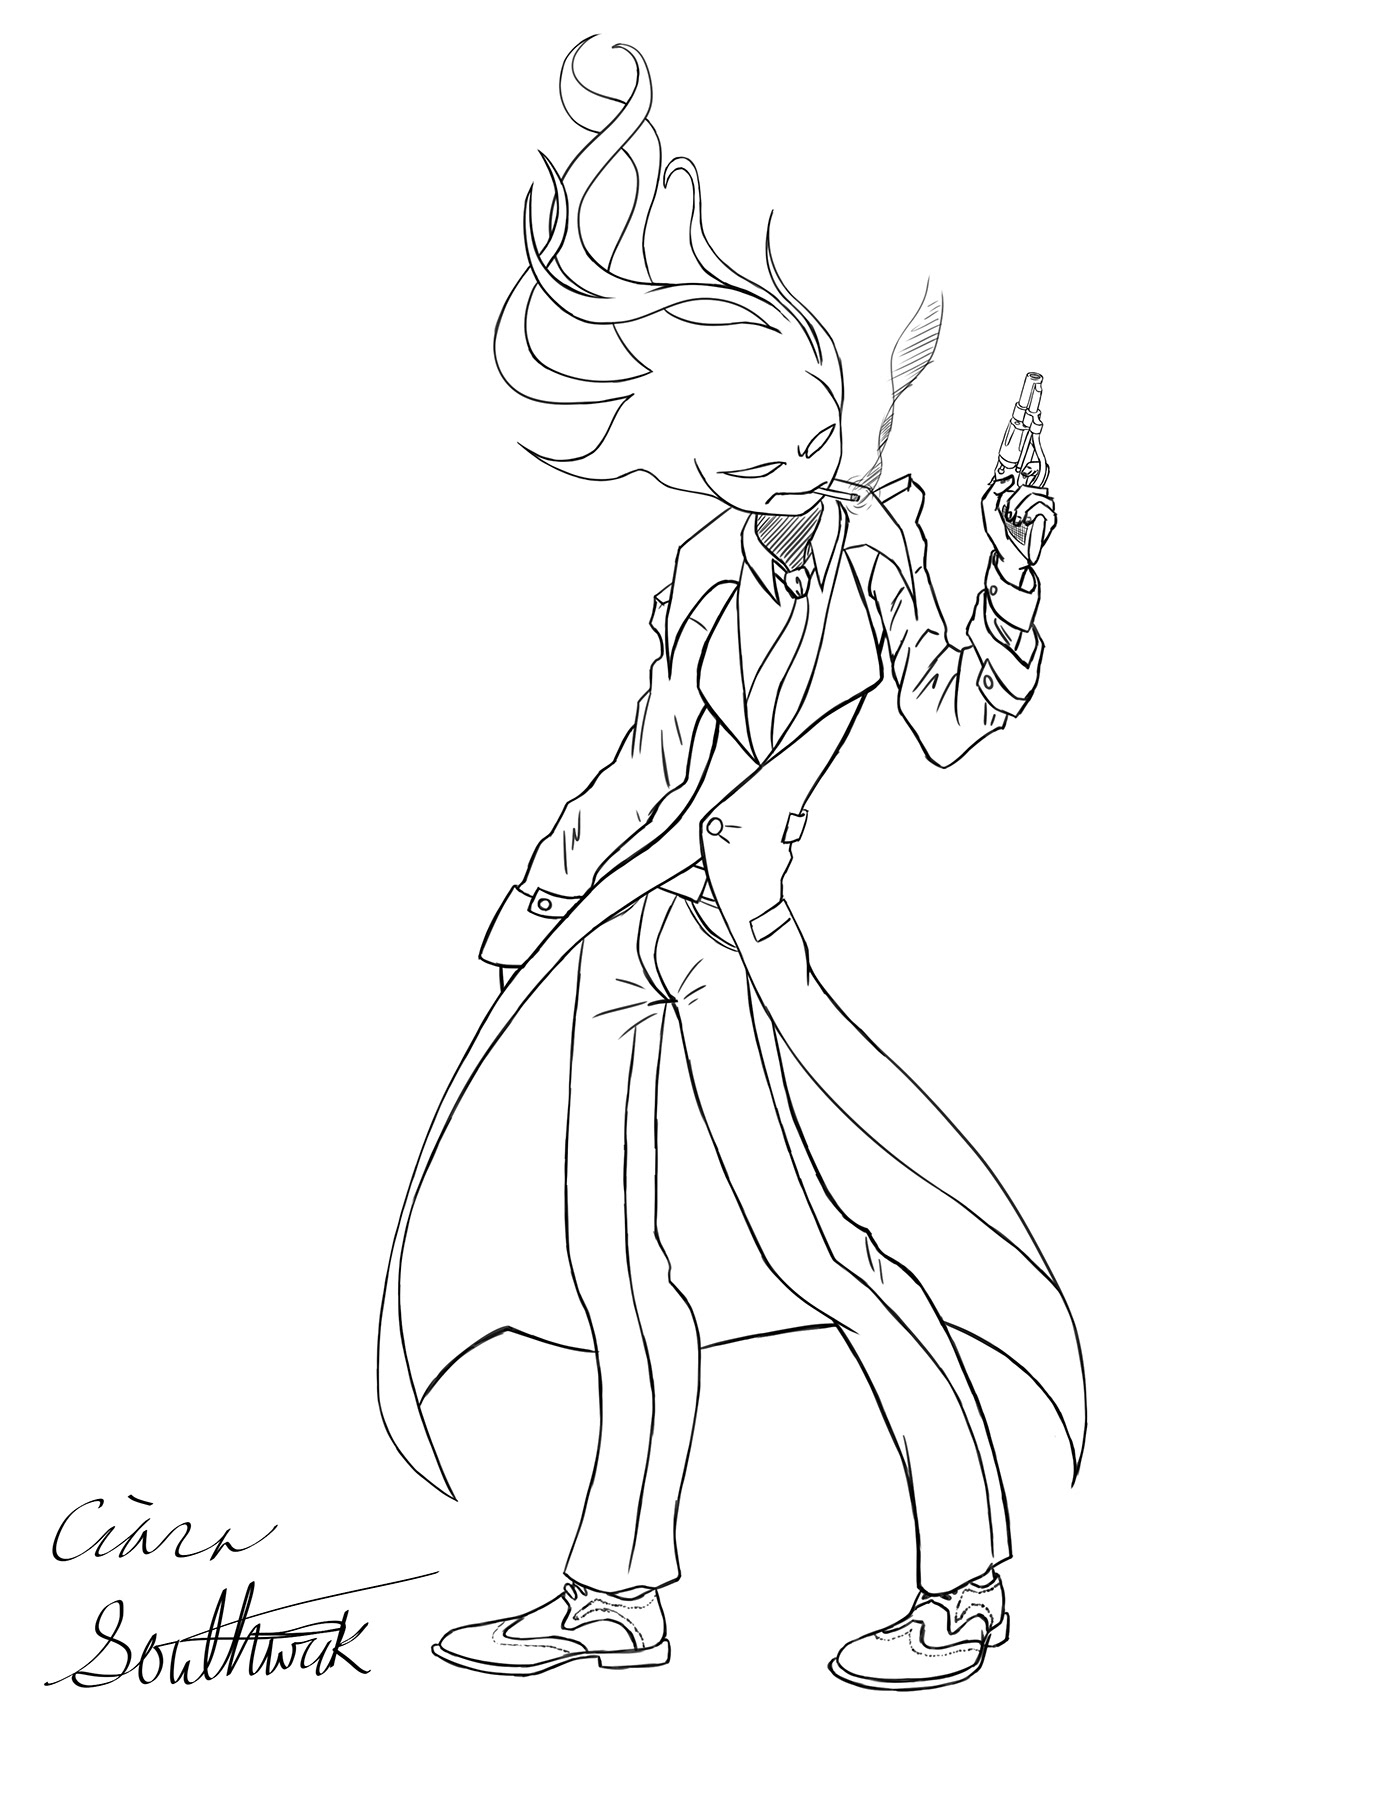 detective Gun fire Monster man Flowing Hair Character design  concept art